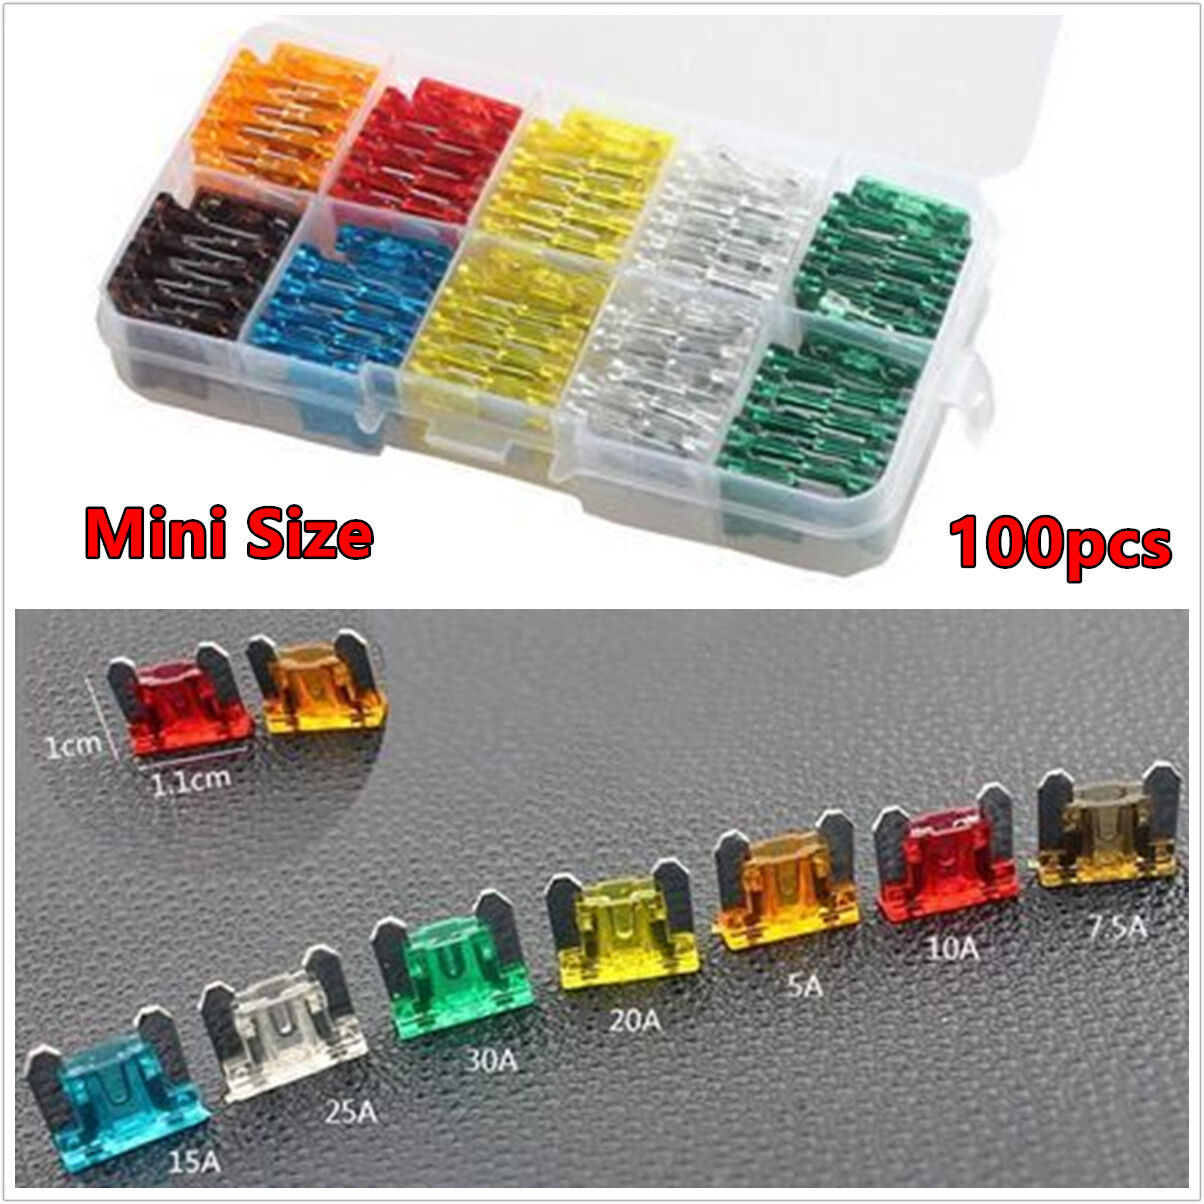 100pcs 5 7.5 10 15 20 25 30 Amp Fuse Assorted Kit Car Mini Low Profile Fuse Box